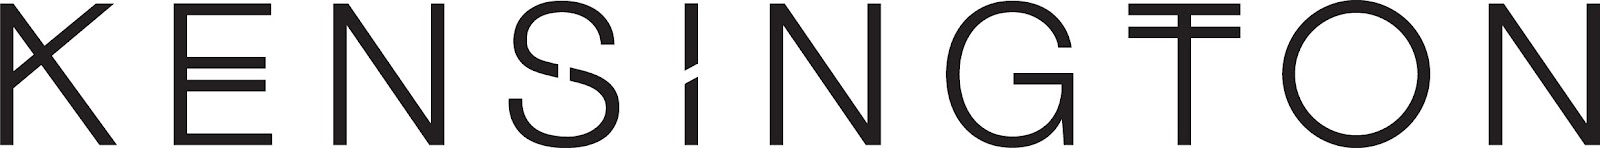 Kensington_logo